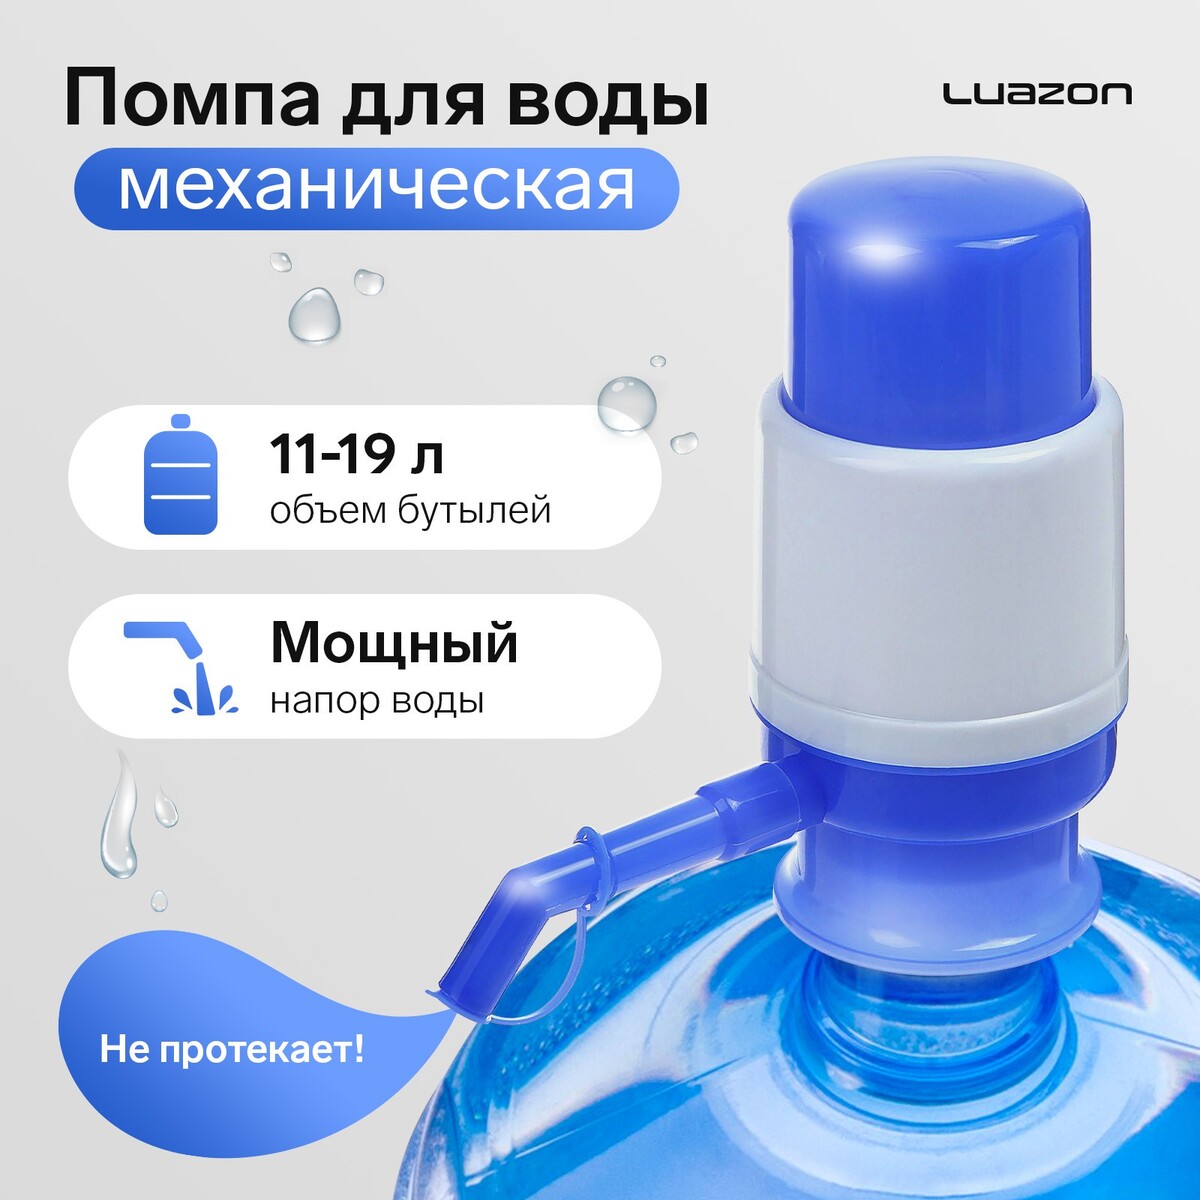 Помпа для воды luazon, механическая, малая, под бутыль от 11 до 19 л, голубая помпа для воды luazon norma механическая большая под бутыль от 11 до 19 л голубая